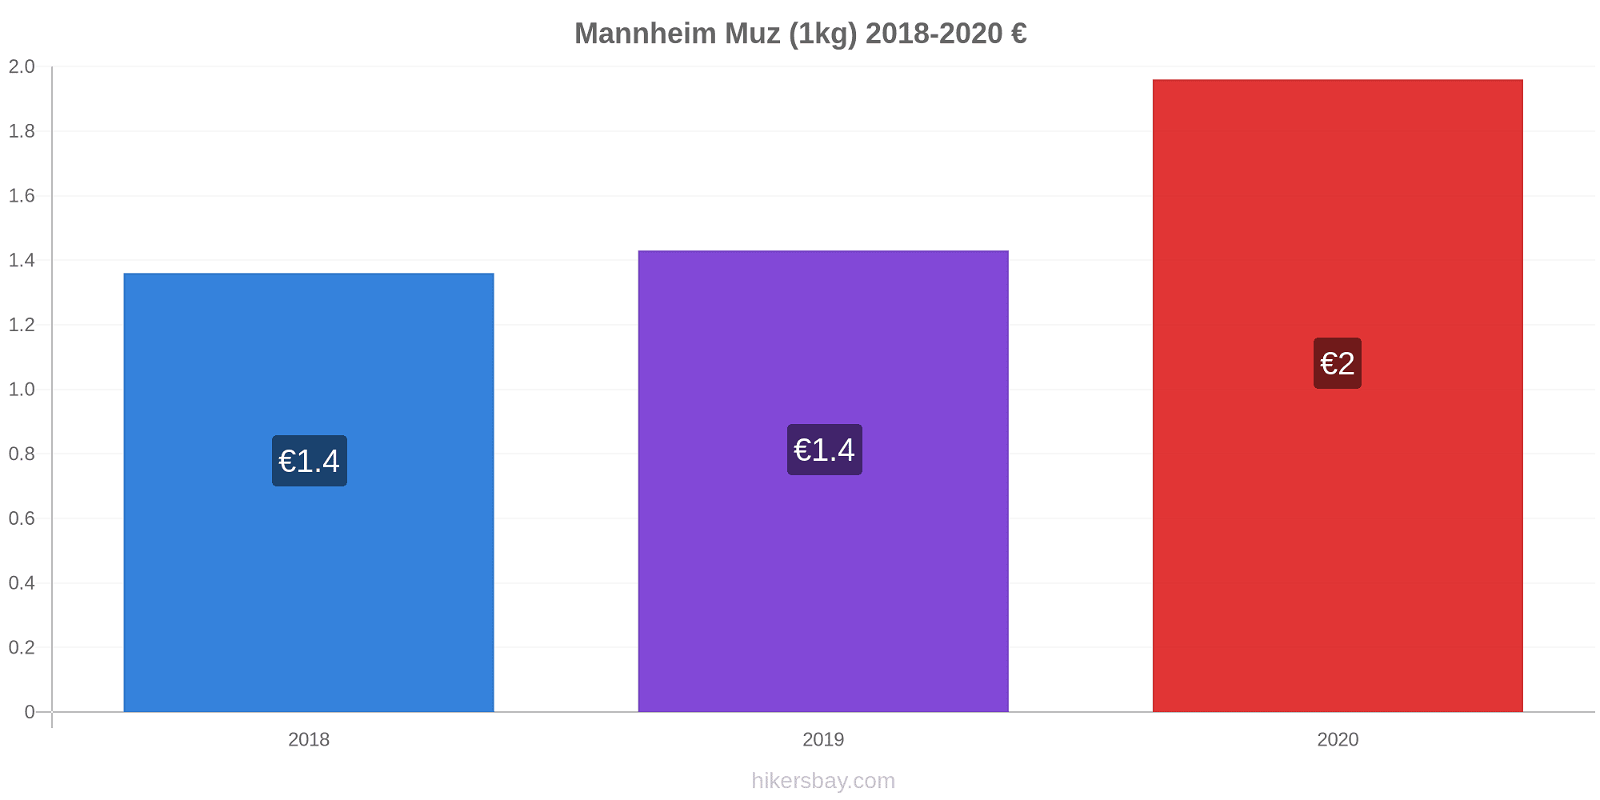 Mannheim fiyat değişiklikleri Muz (1kg) hikersbay.com